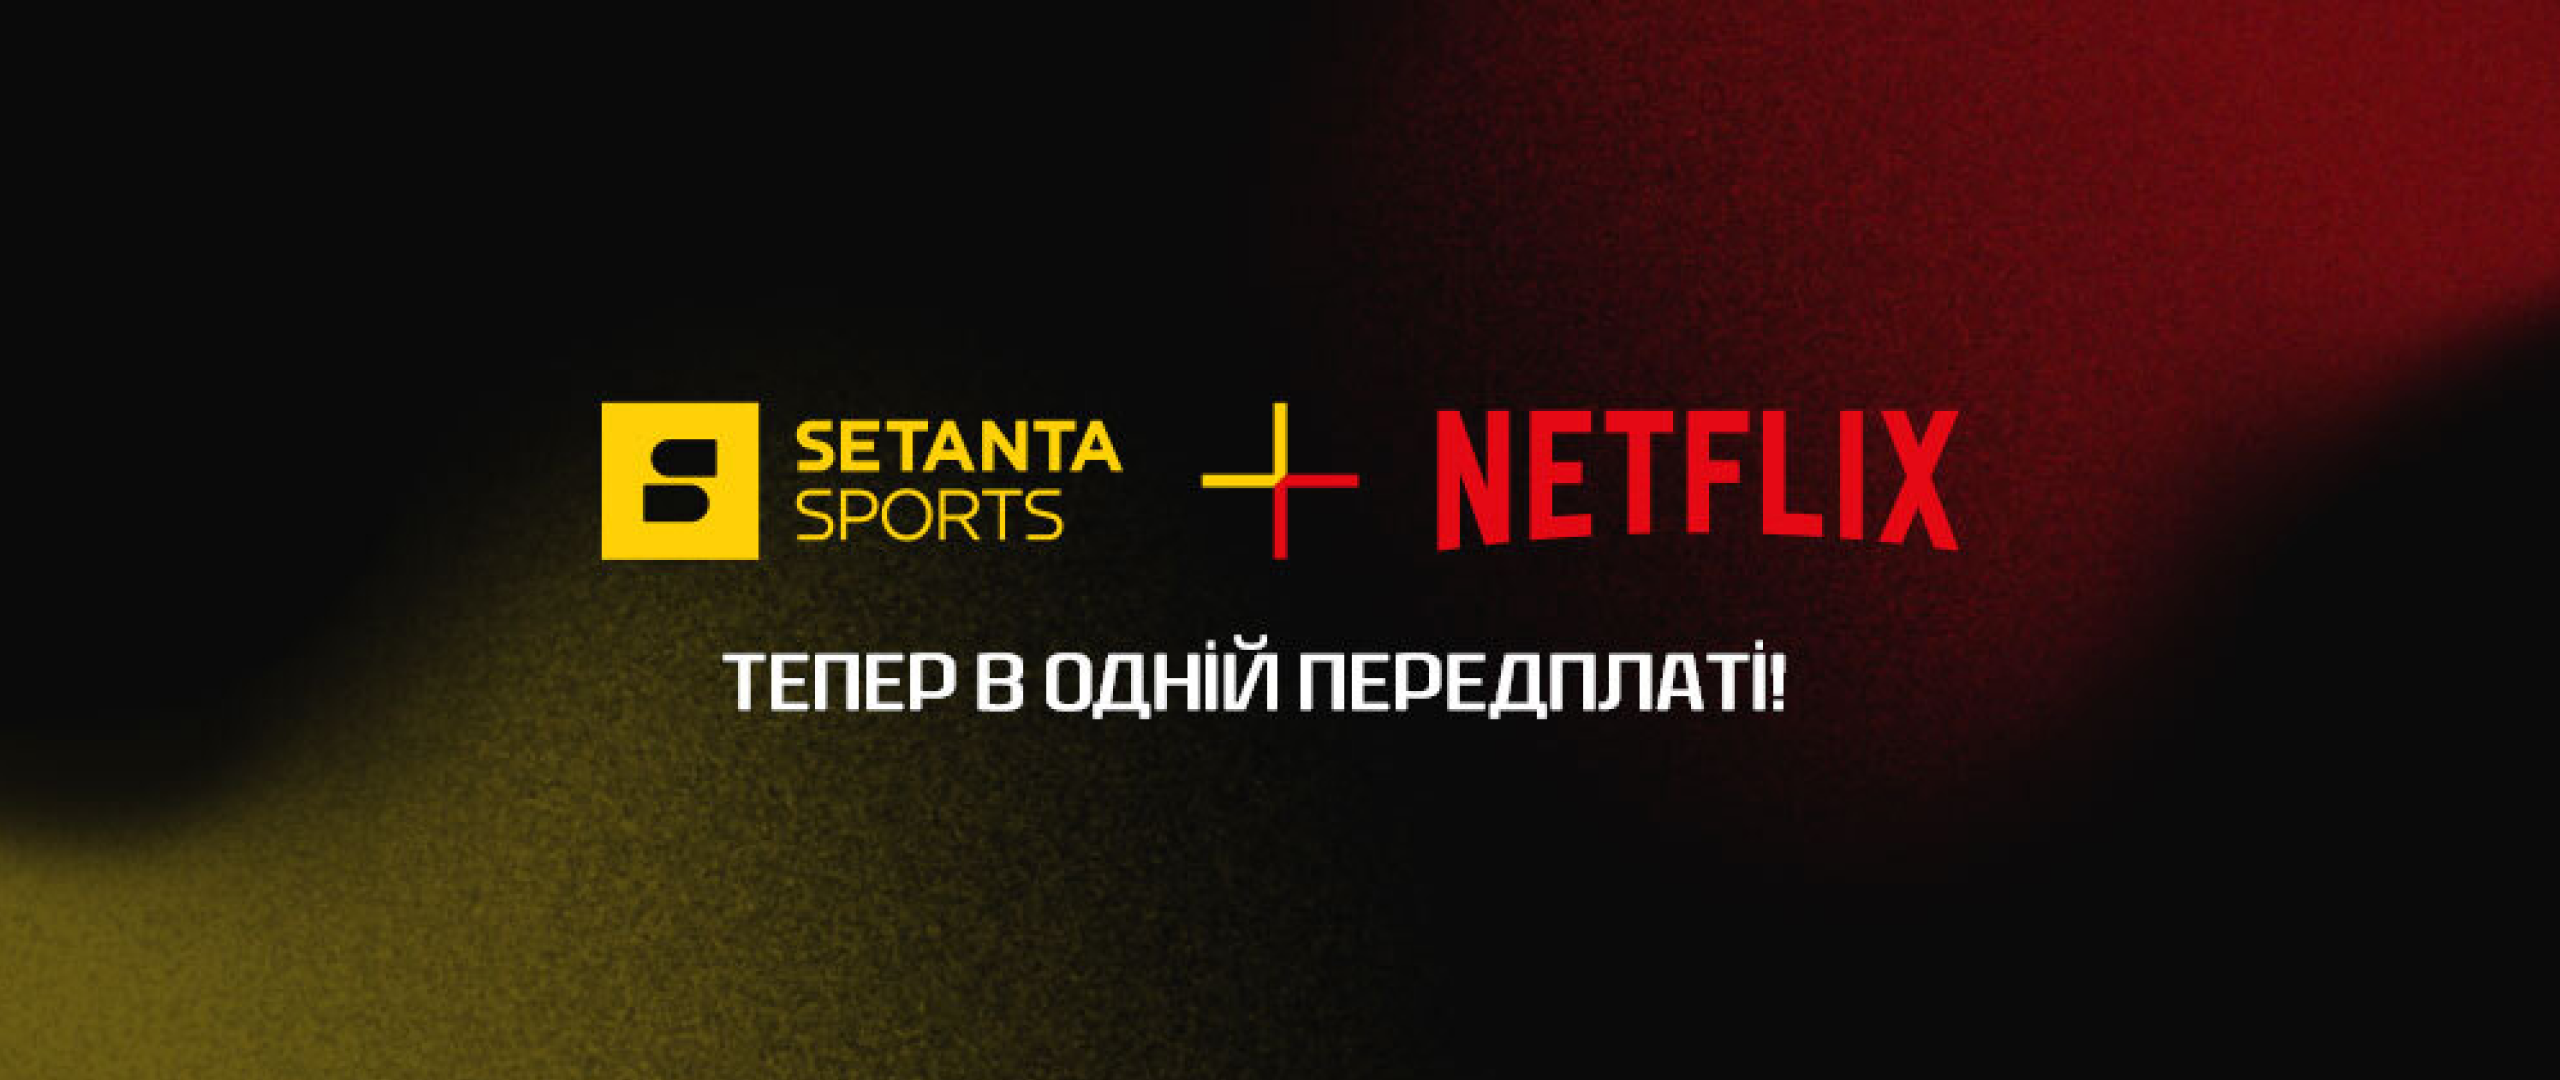 Setanta Sports об’єдналась з Netflix. Нова підписка відкриває доступ до обох платформ за єдиною платою